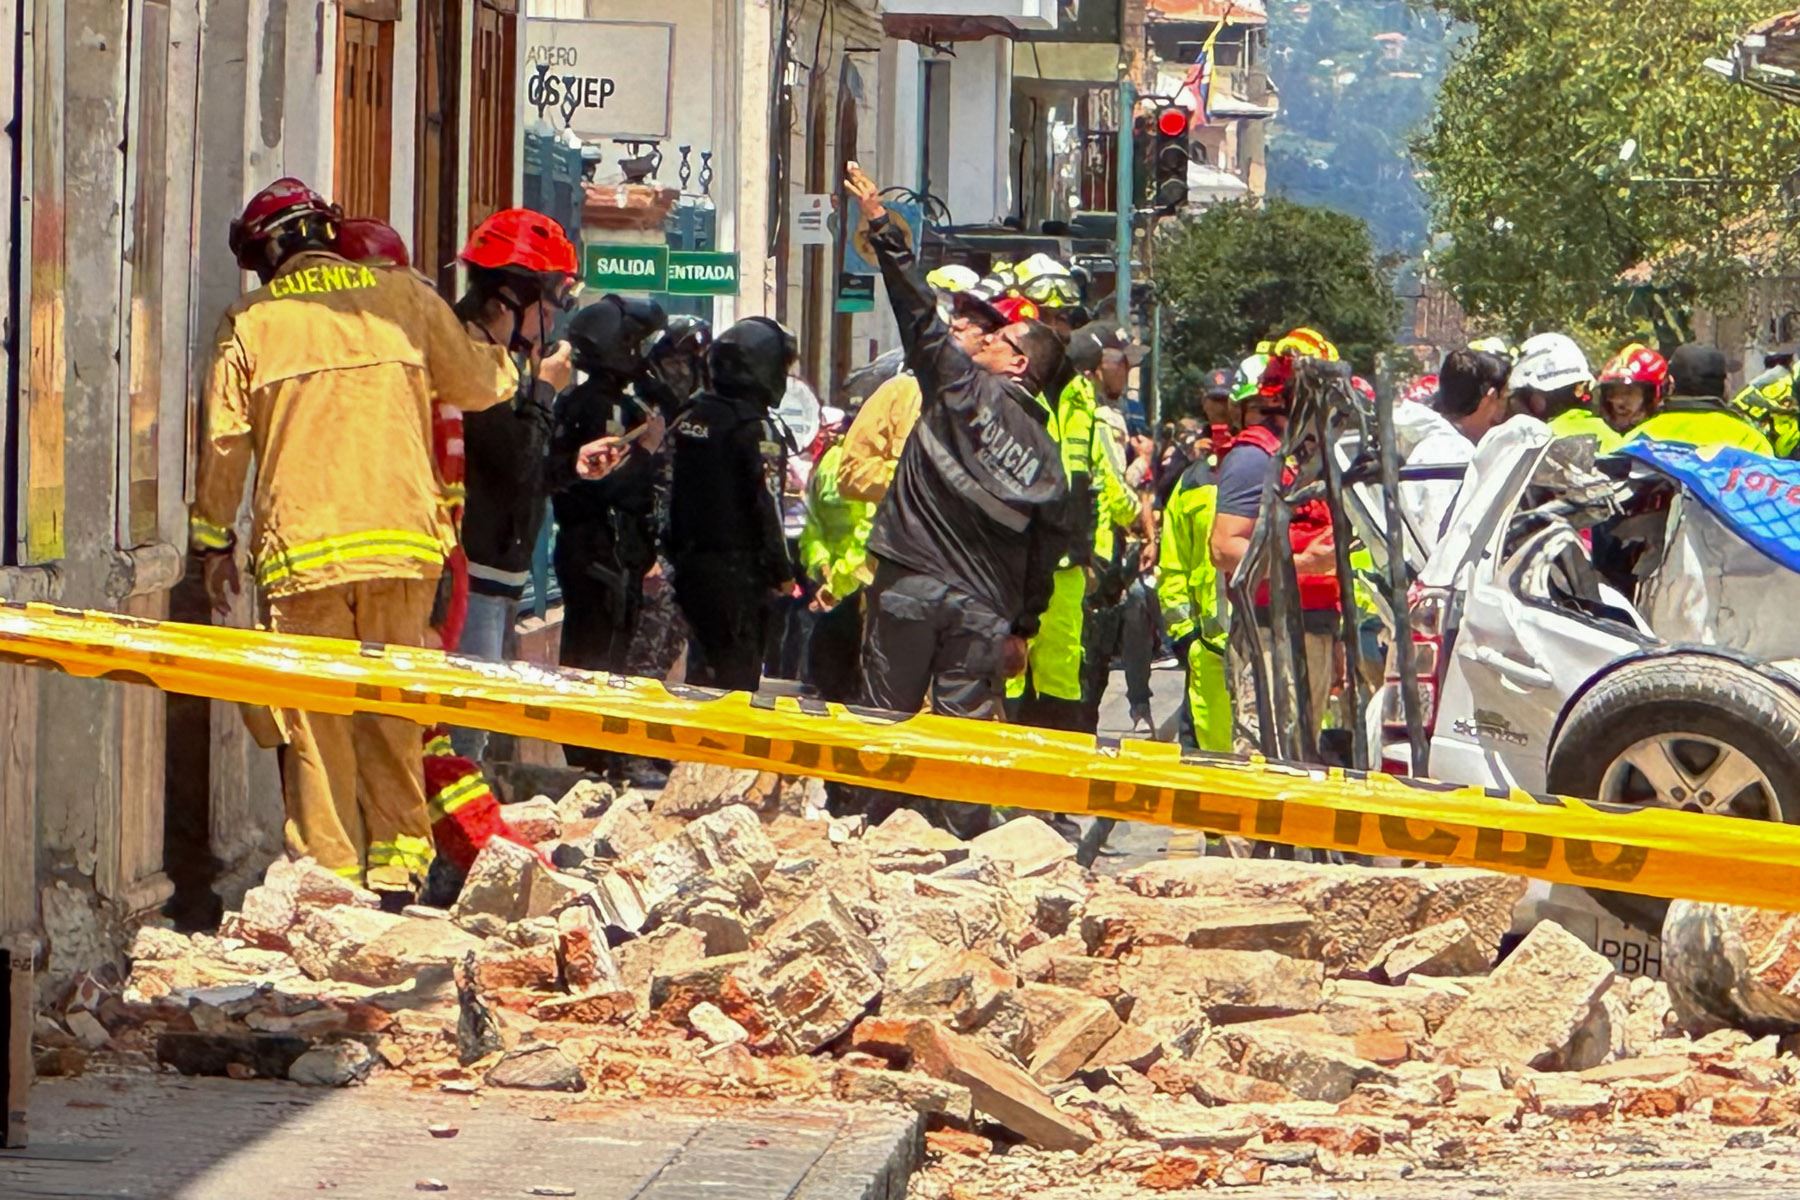 El movimiento telúrico alcanzó una magnitud 7 en territorio peruano según el reporte de Instituto Geofísico del Perú (IGP), que agregó que diez minutos después se produjo otro movimiento telúrico de magnitud 4,1 en la misma zona. Foto: EFE